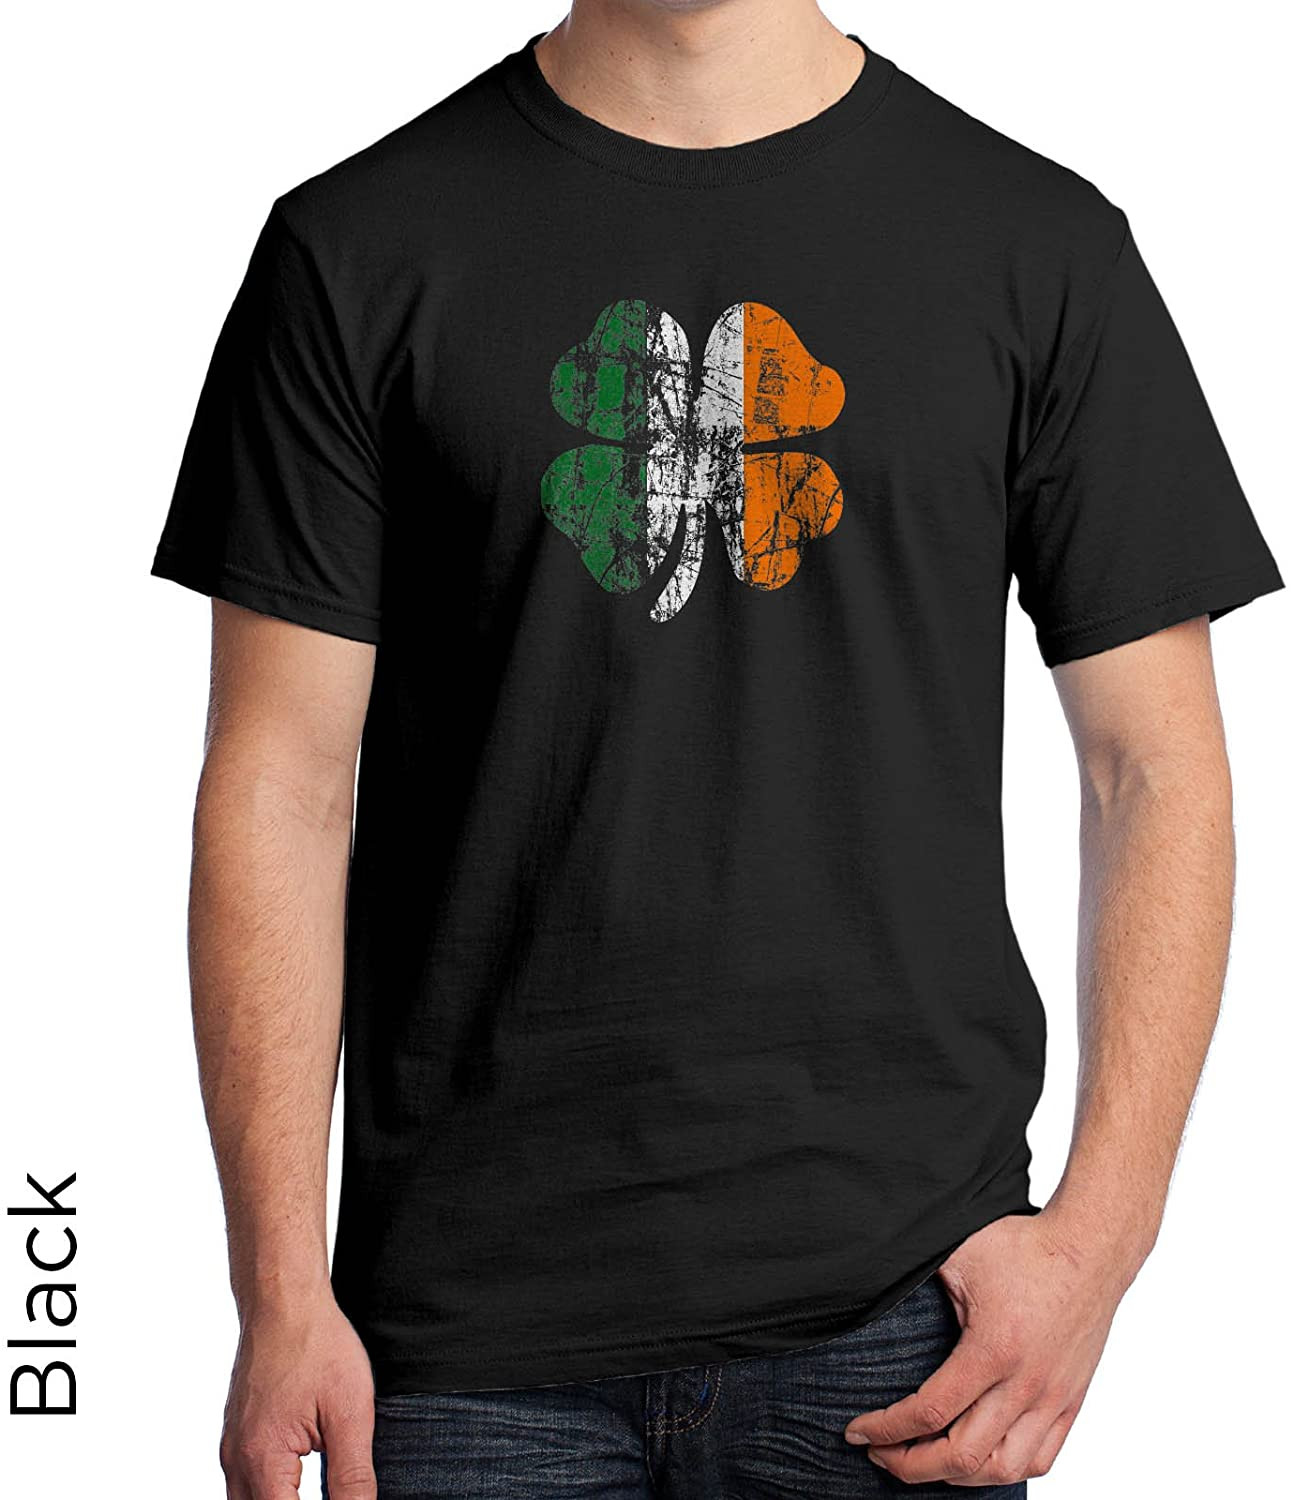 St. Patricks Day T-Shirt